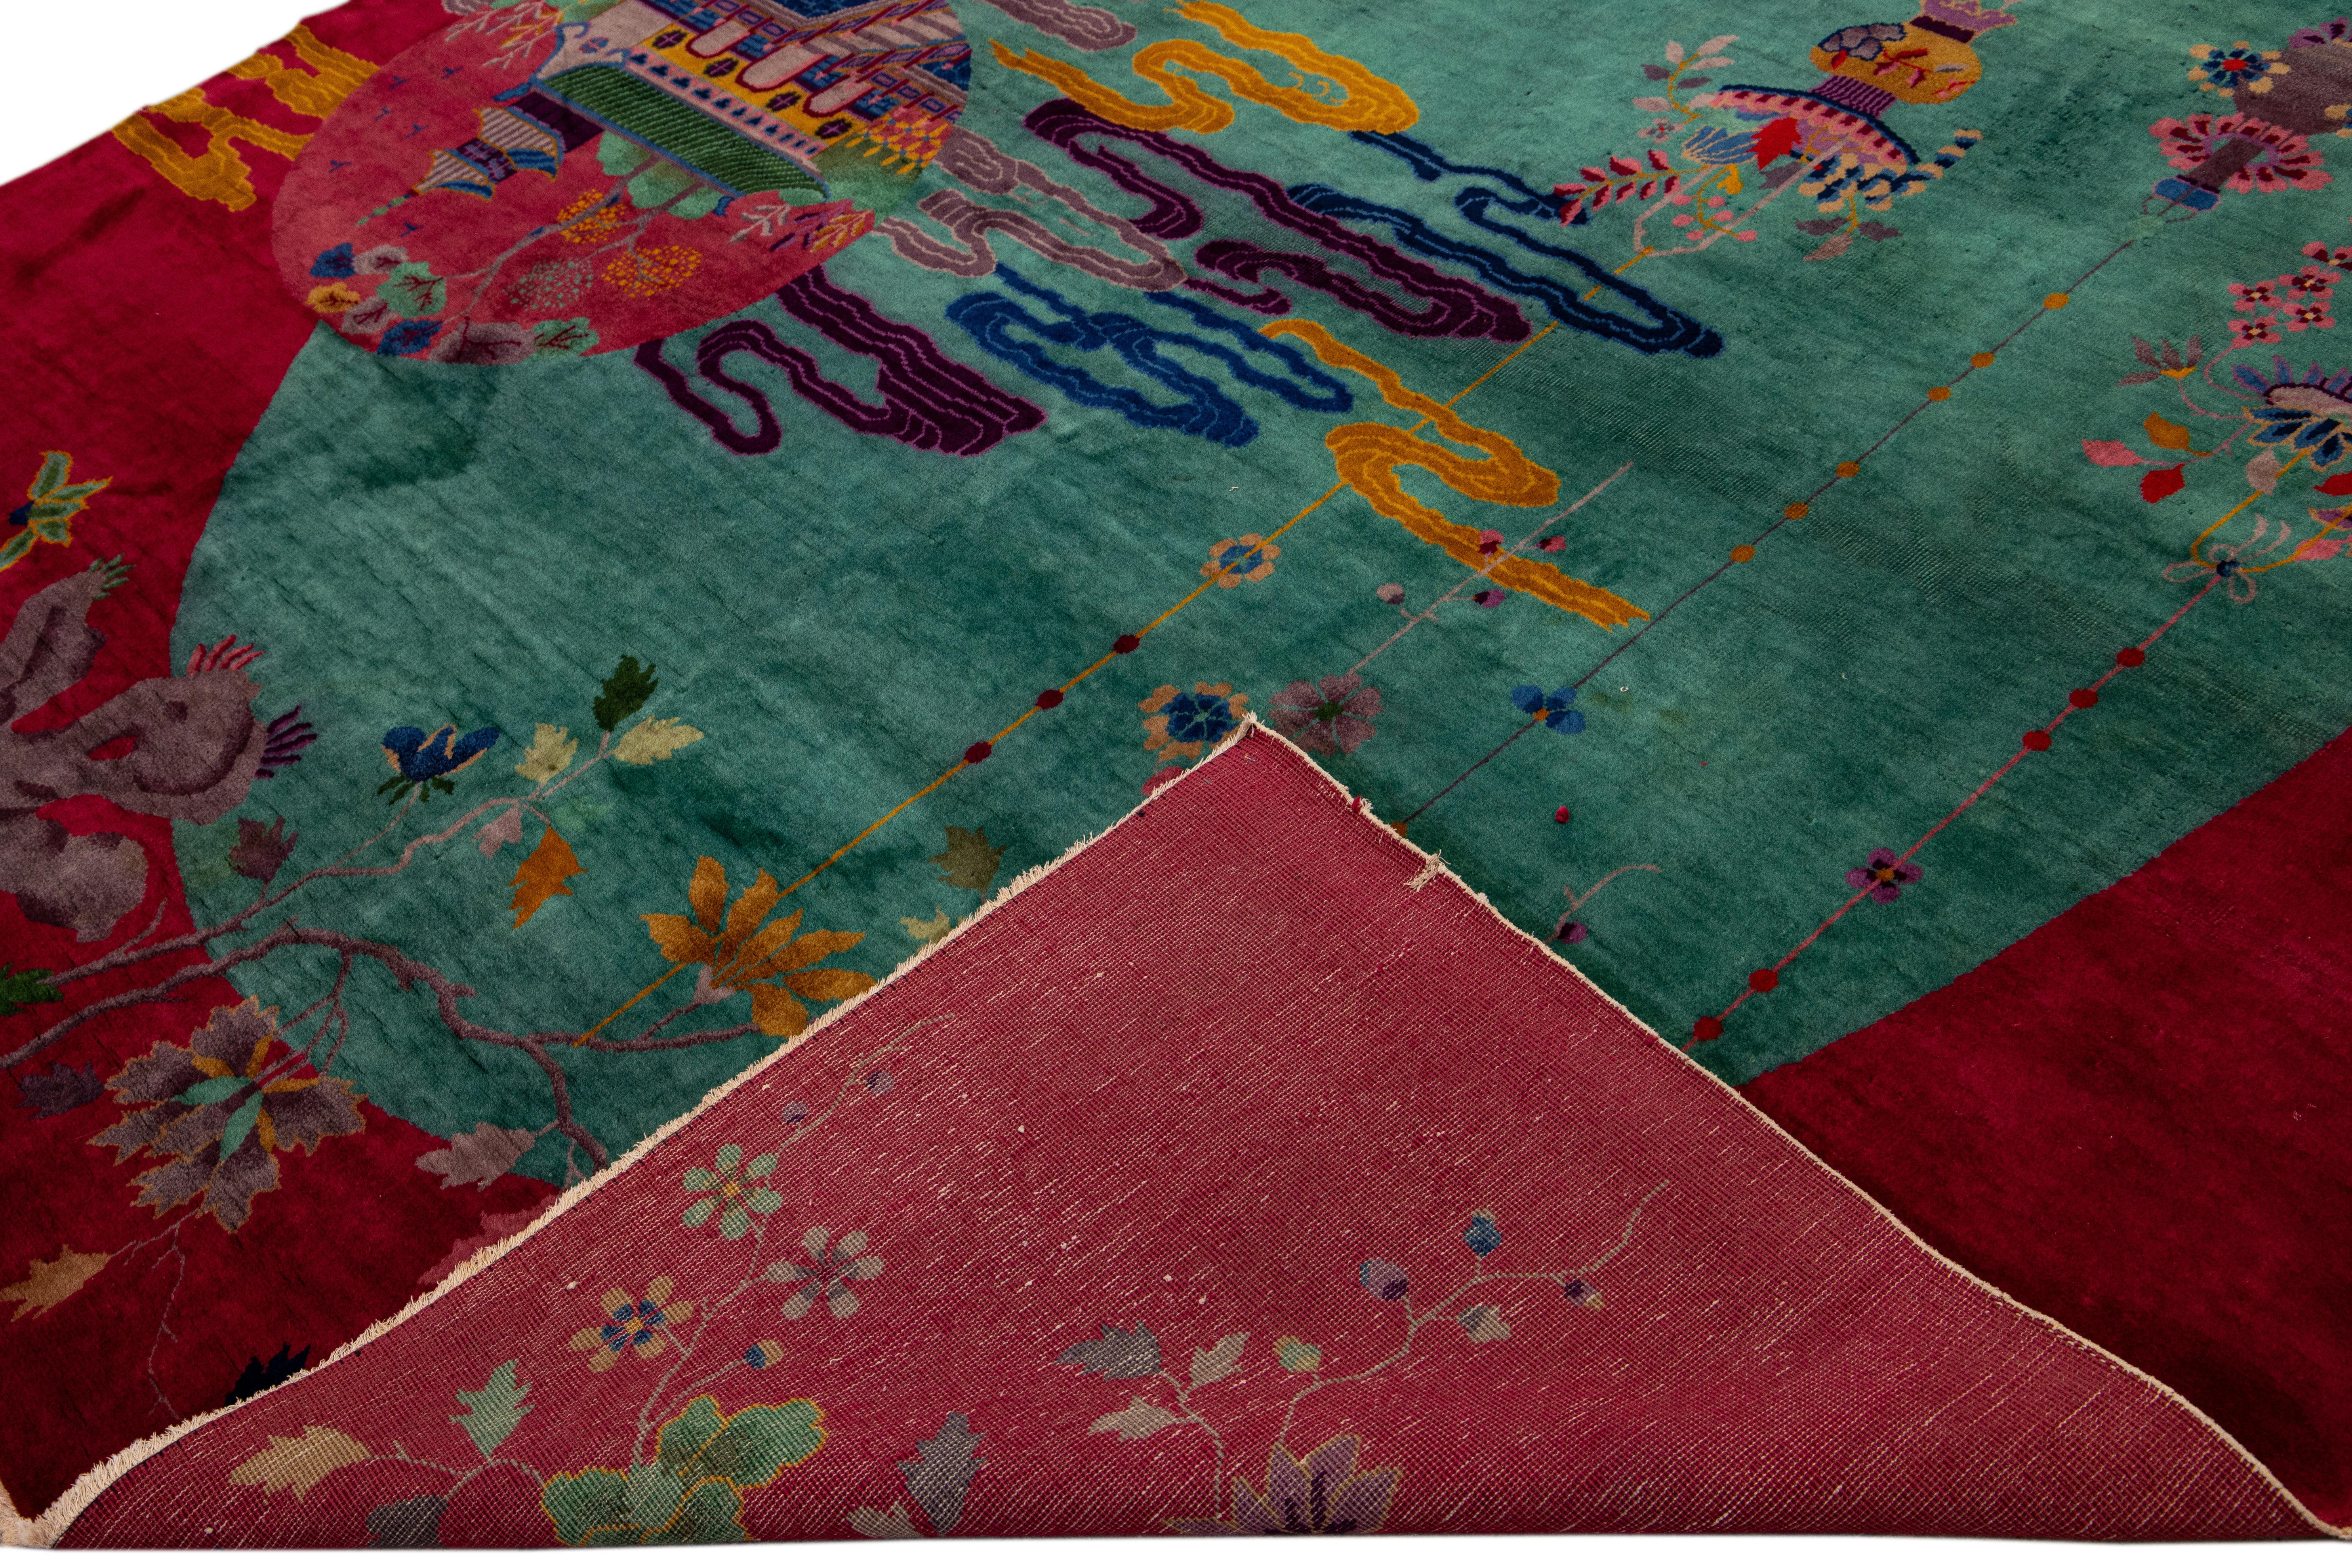 Schöner antiker chinesischer Art-Déco-Teppich aus handgeknüpfter Wolle mit einem grünen Feld. Dieser chinesische Teppich hat einen breiten roten Rahmen und mehrfarbige Akzente in einem prächtigen chinesischen Blumenmuster. 

Dieser Teppich misst: